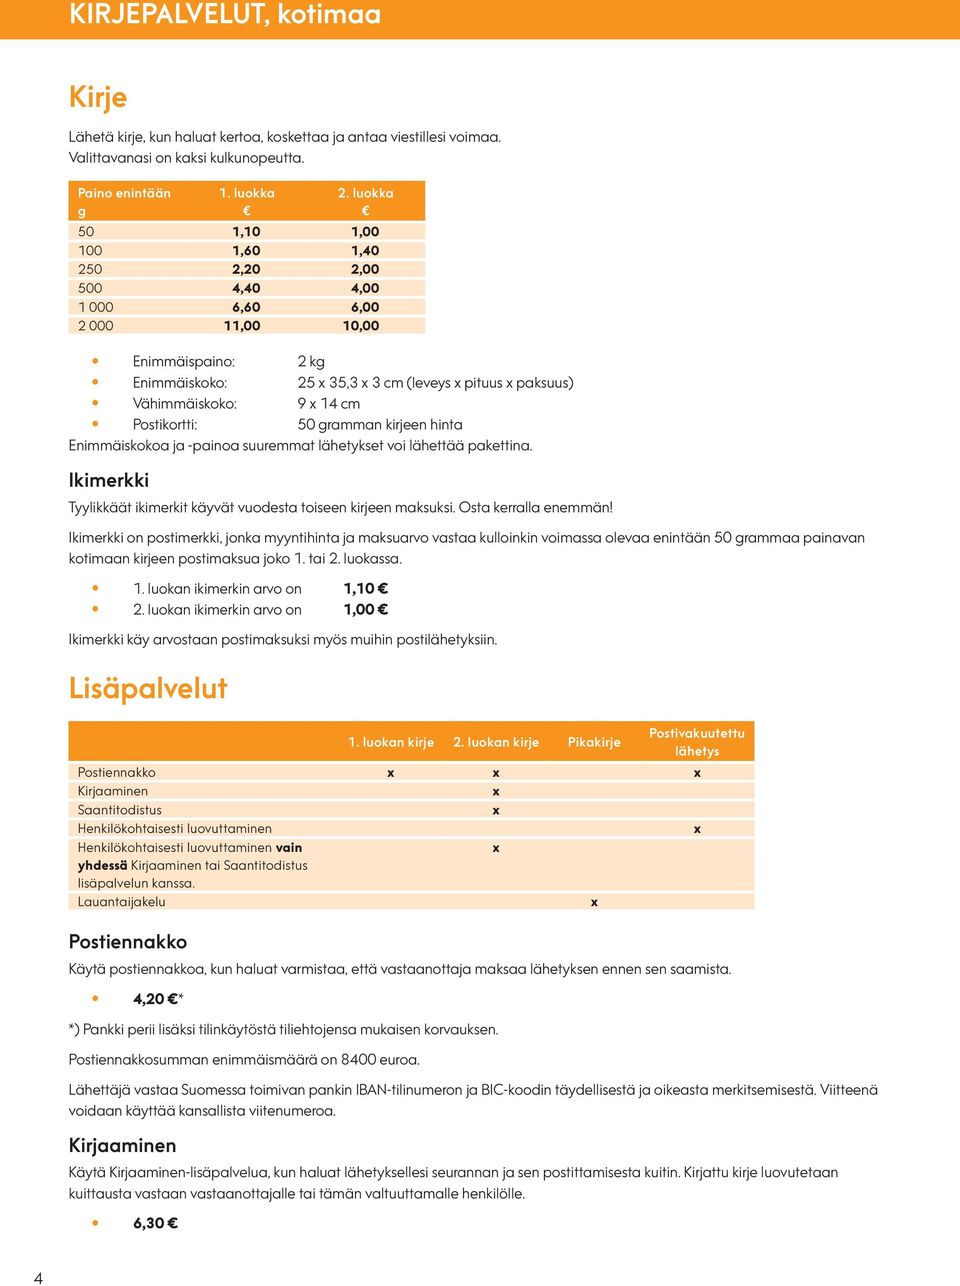 Käteispalvelujen hinnasto - PDF Ilmainen lataus